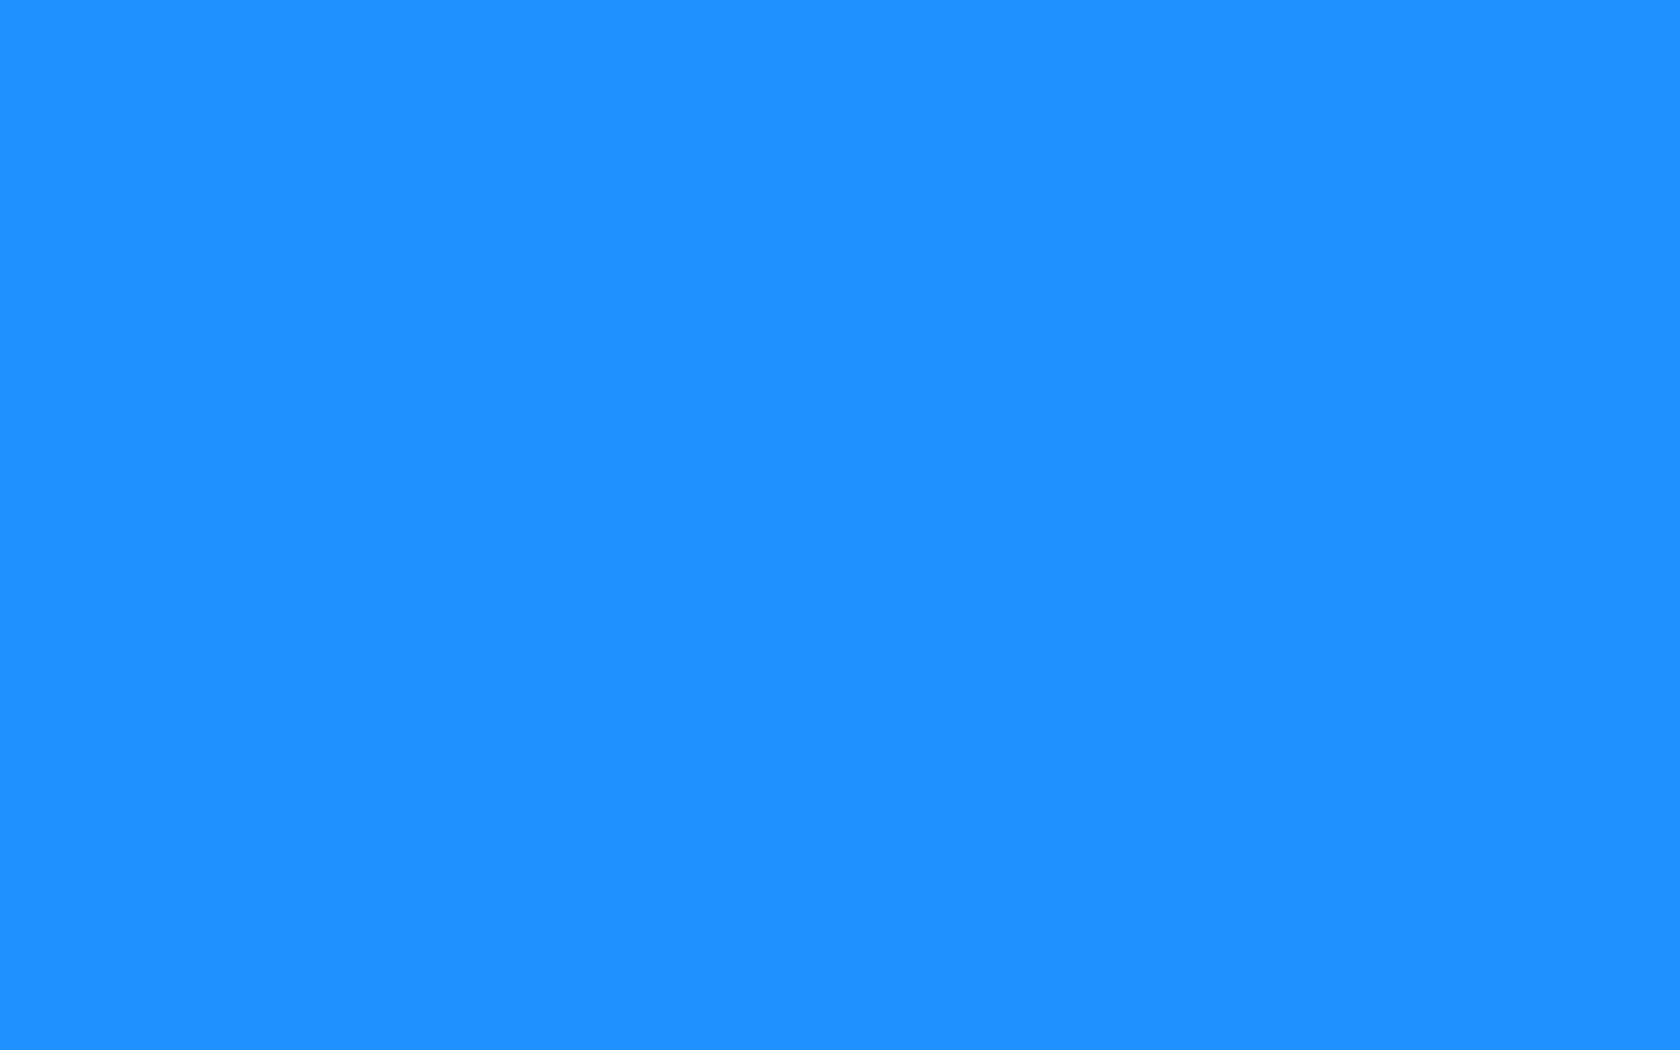 Dodger Blue Solid Color Background chắc chắn sẽ làm cho yêu biển và màu xanh sẽ thích thú. Với sắc màu rực rỡ, trẻ trung và tươi sáng, hình nền này sẽ mang lại không gian làm việc sáng tạo và năng động.